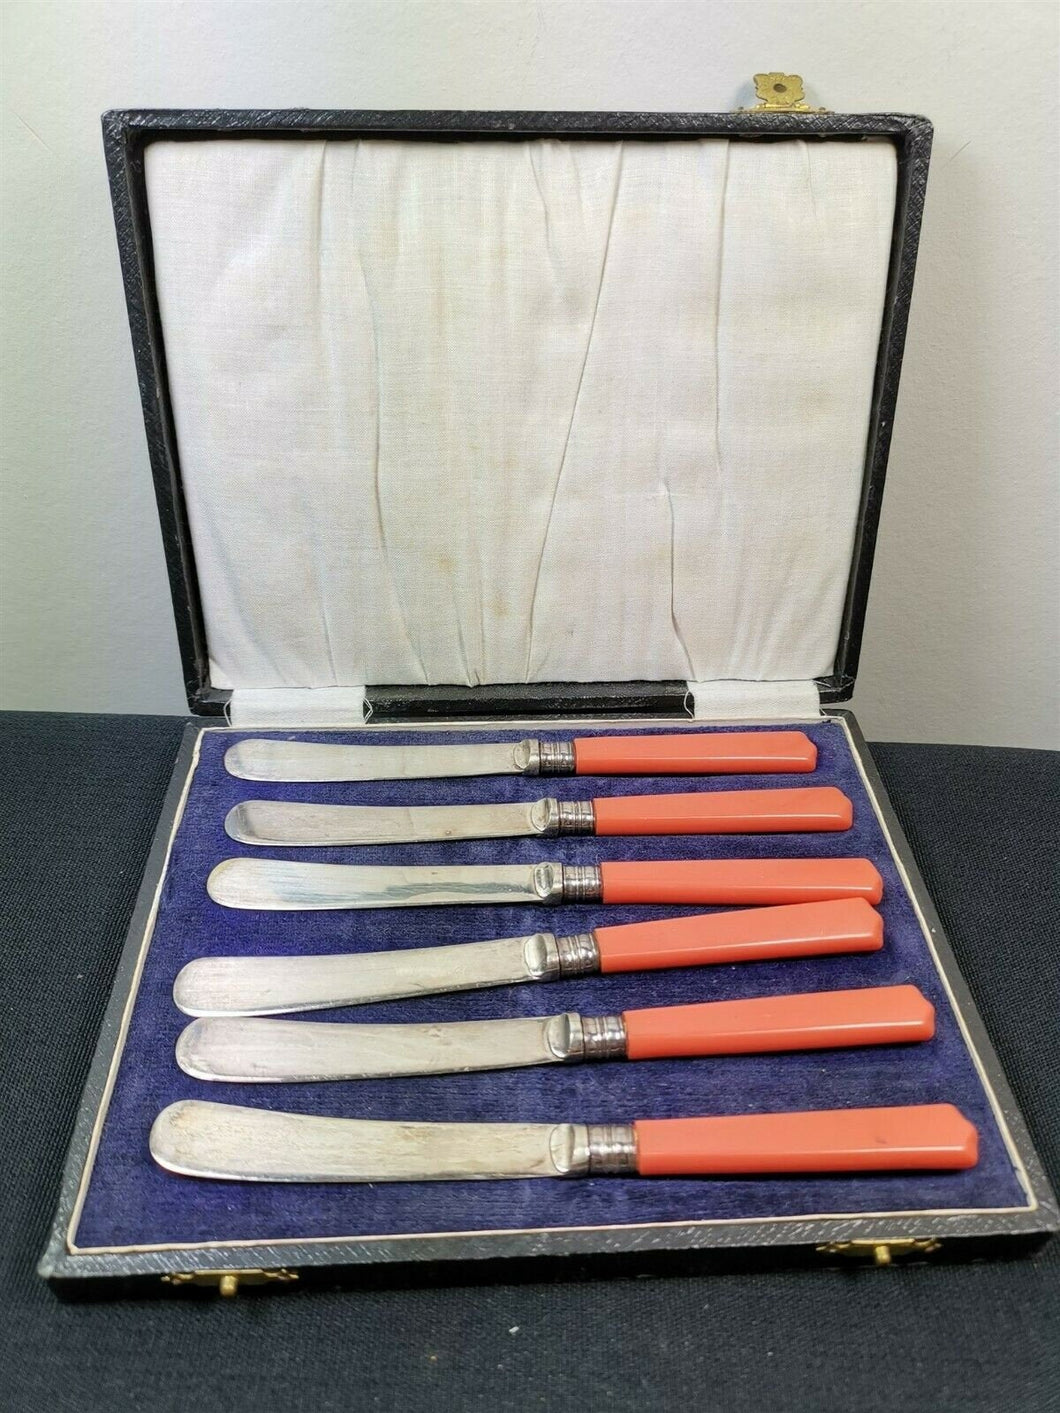 VIntage Coral Pink Bakelite Butter Knife Knives Set of 6 in Original Presentation Storage Box Silver Plated Original 1920's - 1930's